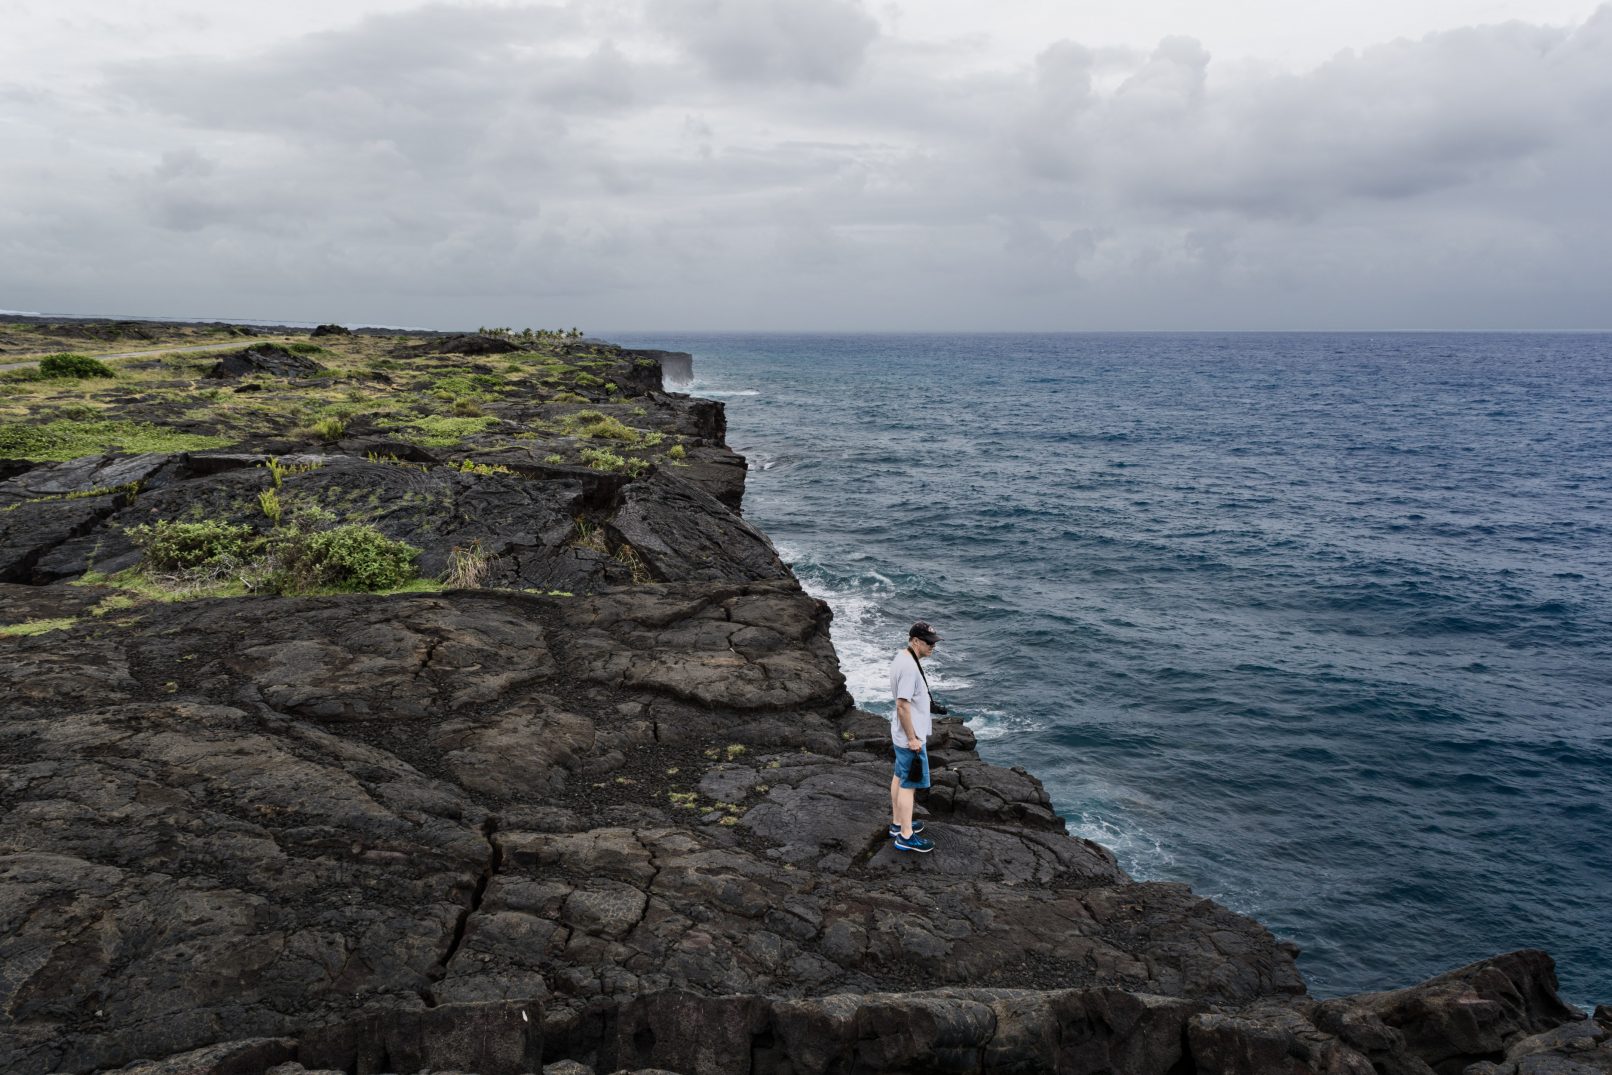 Hawaii coast with lava rock